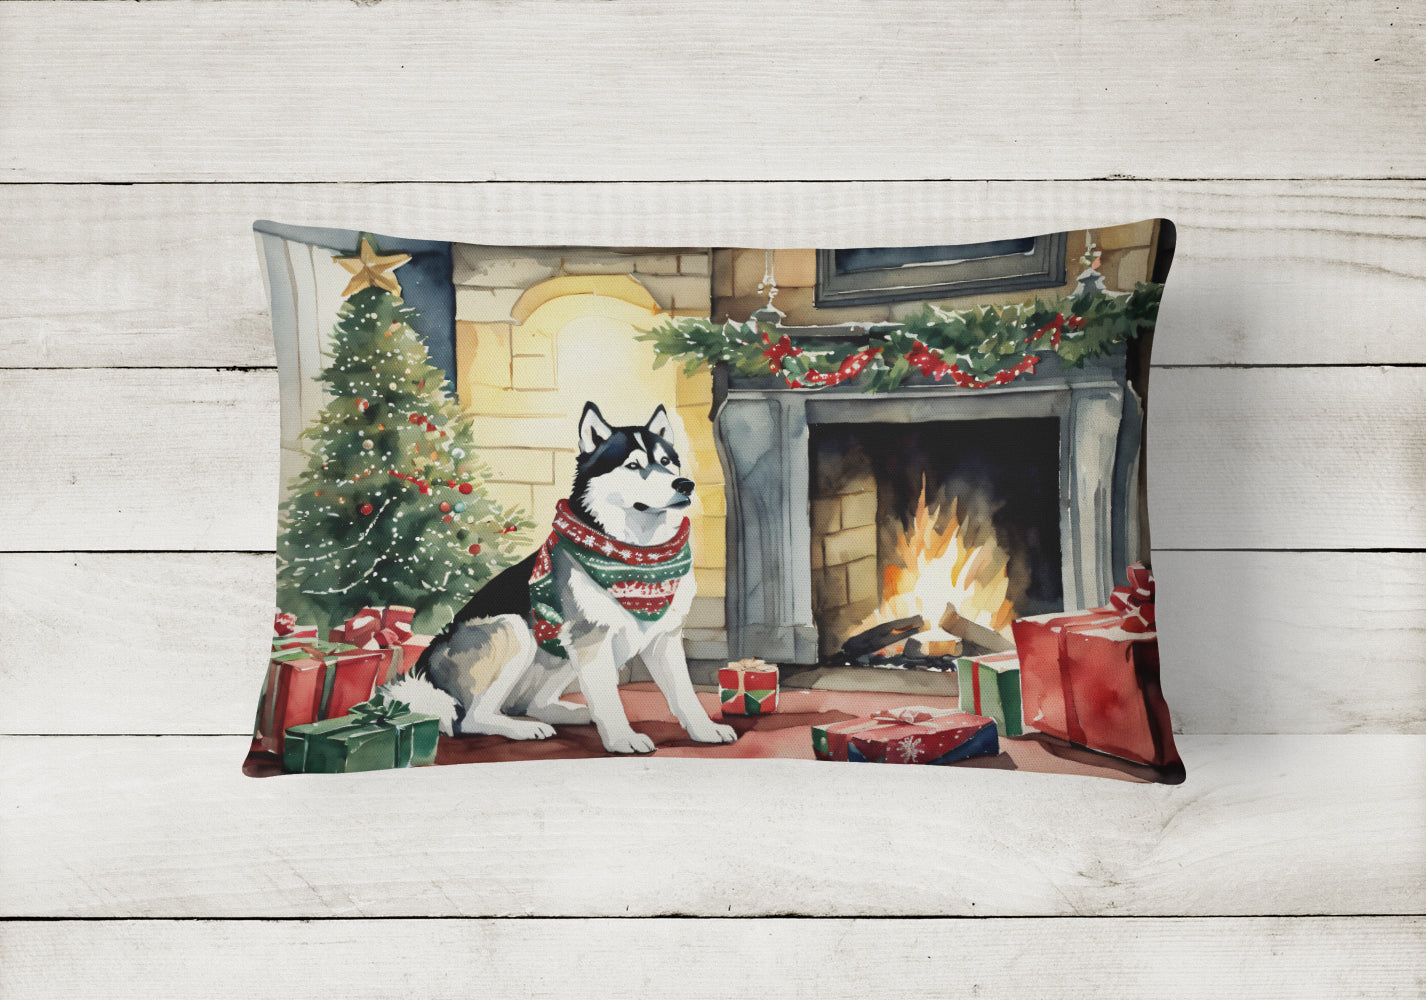 Buy this Siberian Husky Cozy Christmas Throw Pillow